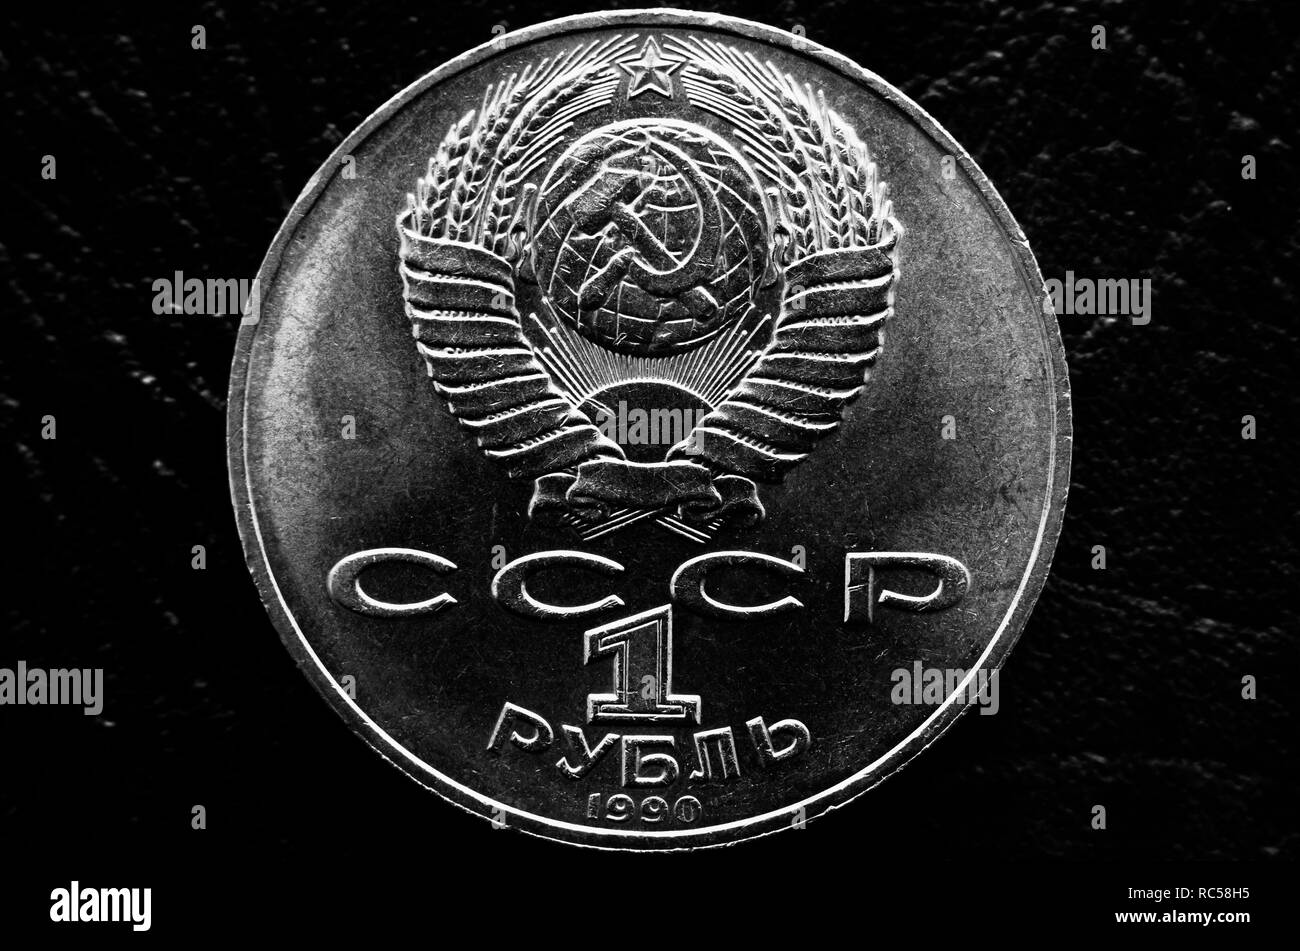 Sowjetische Rubel mit dem Emblem der Sowjetunion und der Inschrift in einem Russischen "Rubel" und "UDSSR" in Schwarz und Weiß Stilisierung Stockfoto